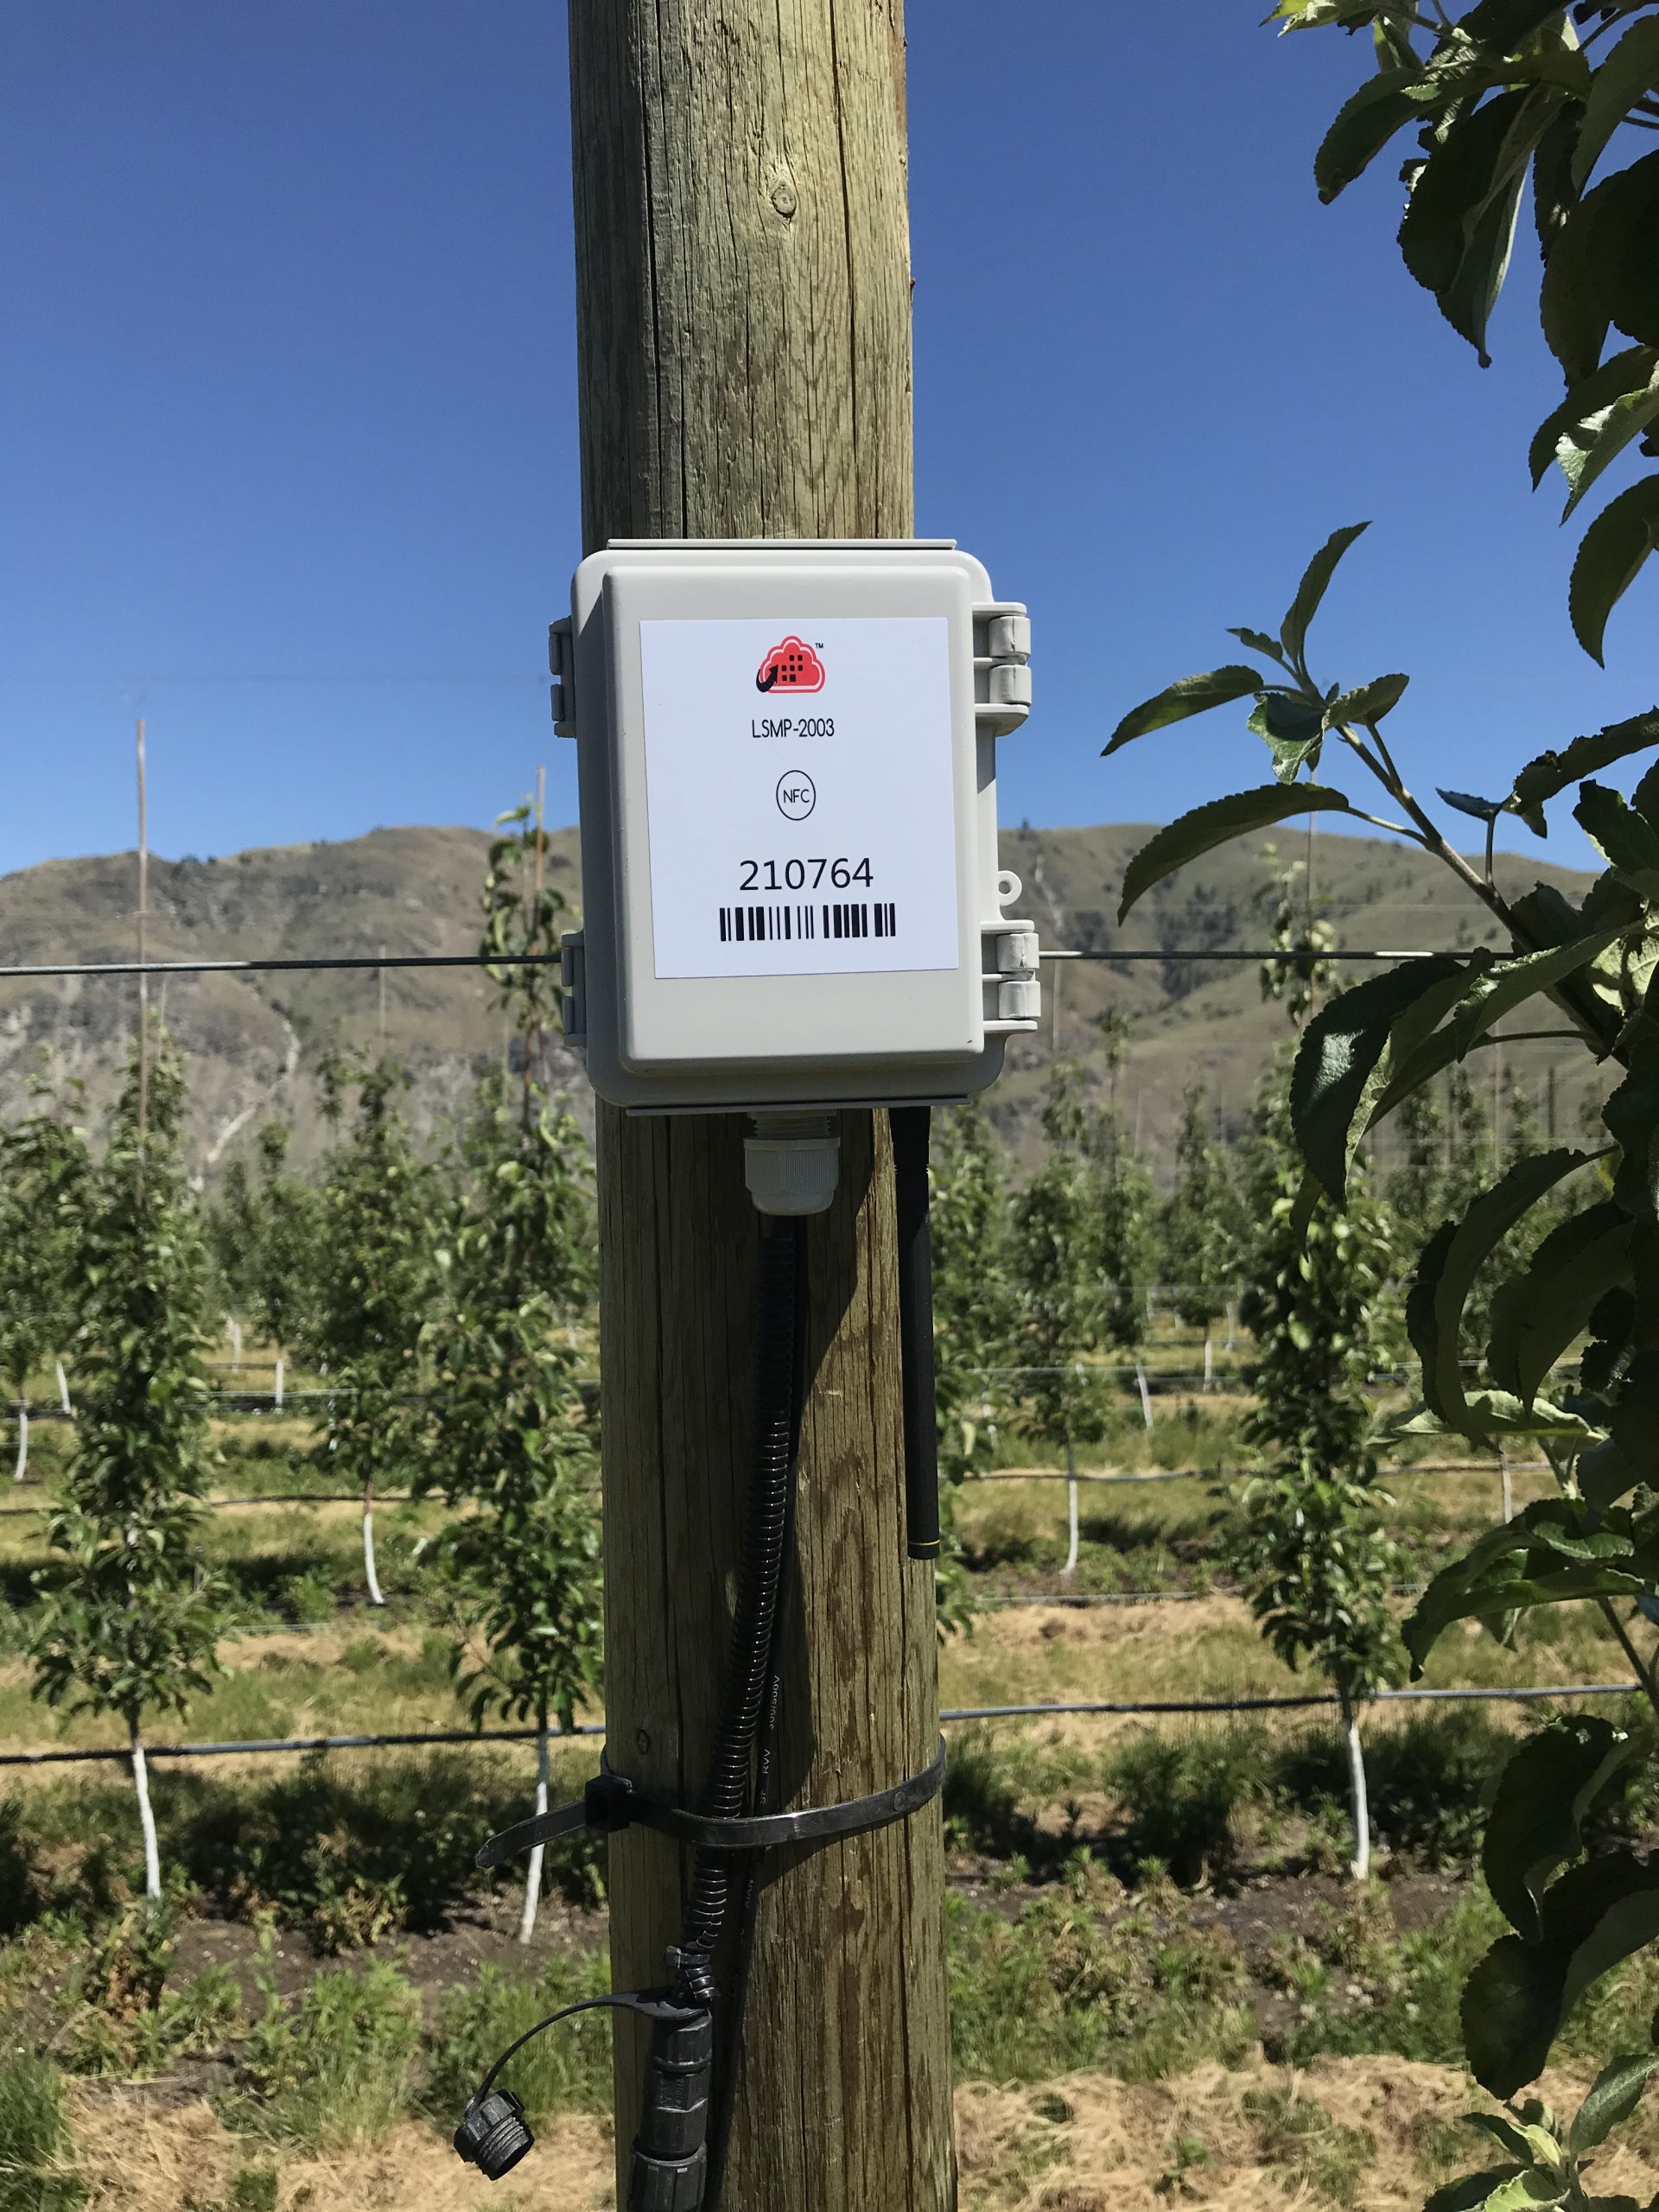 Zenseio orchard monitoring telemetry